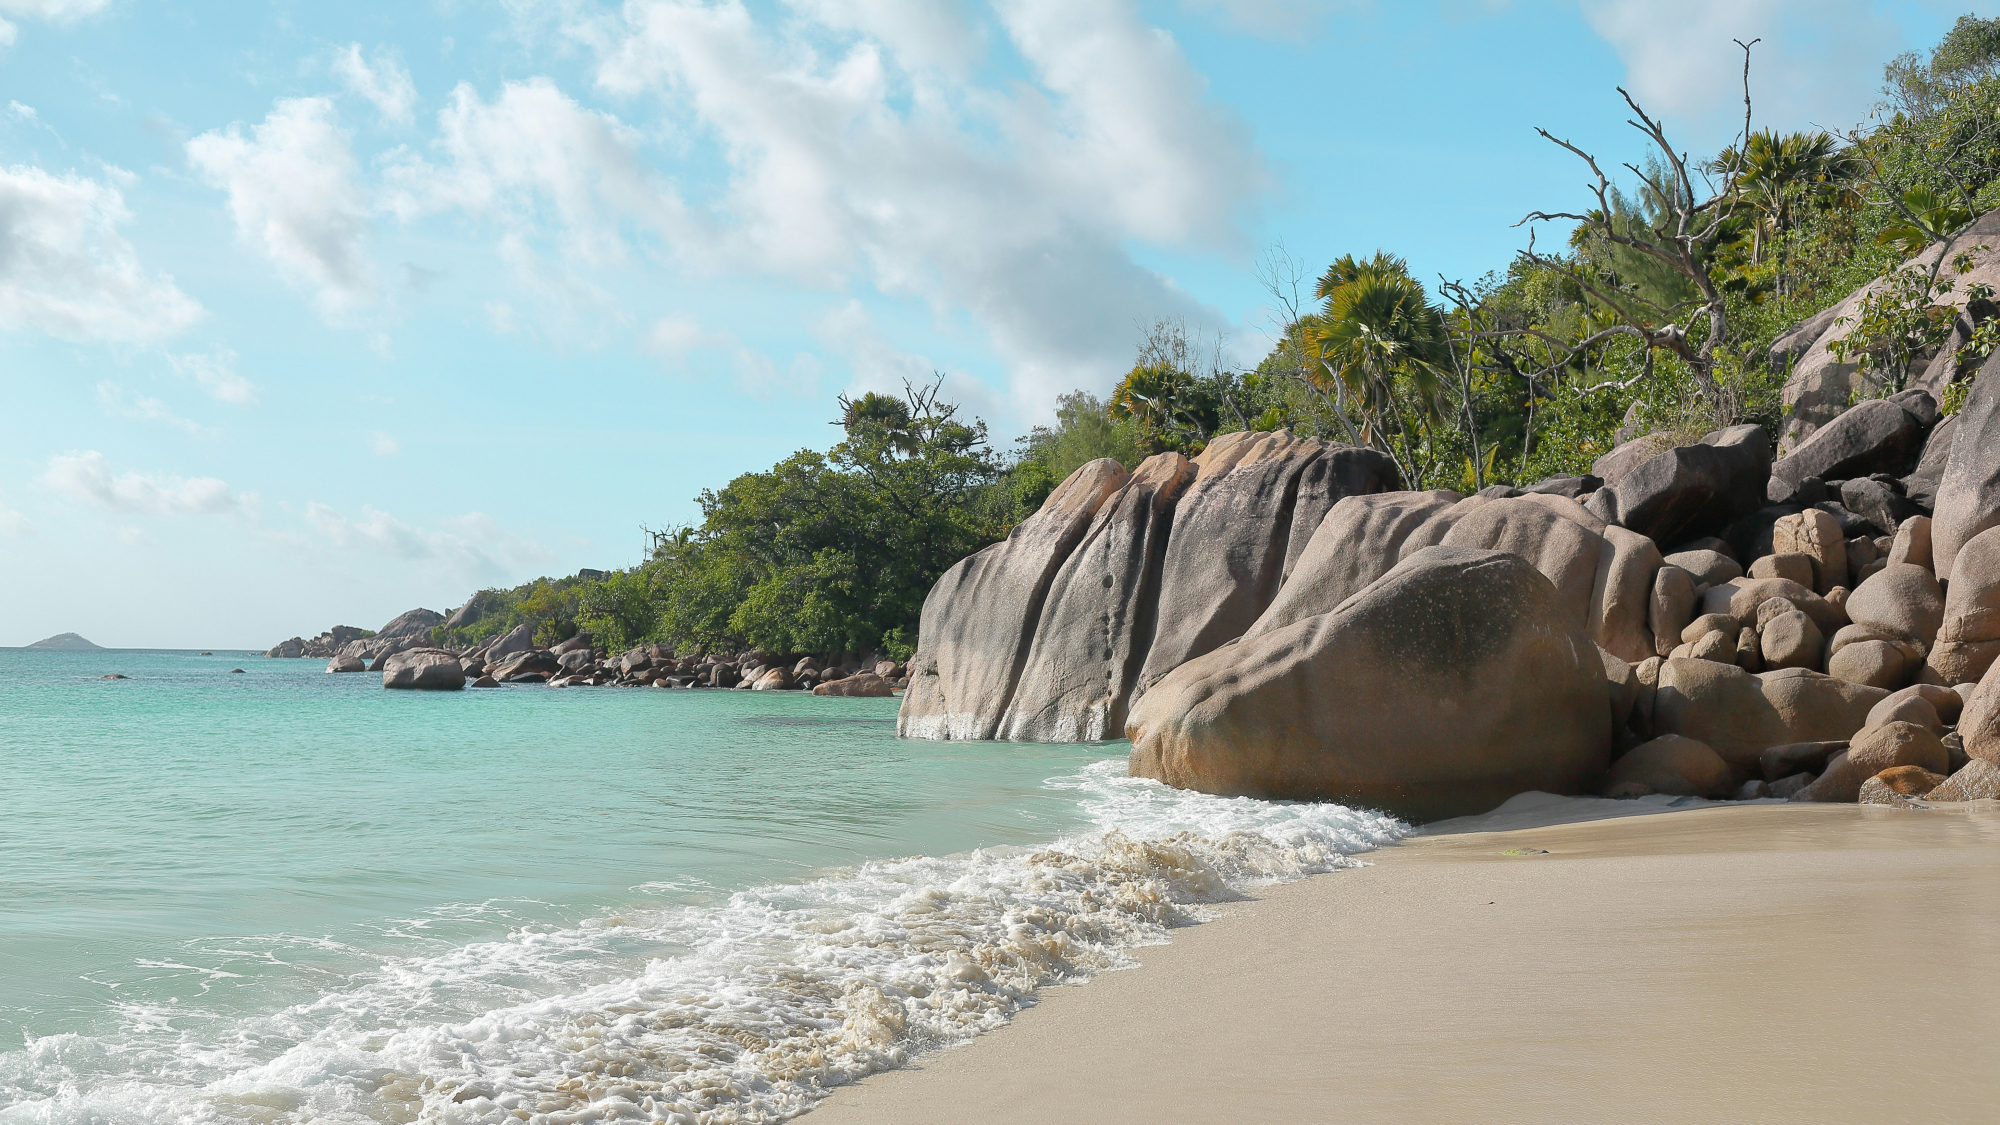 découvrez les paysages époustouflants des seychelles lors d'un road trip inoubliable à travers ces îles paradisiaques de l'océan indien.